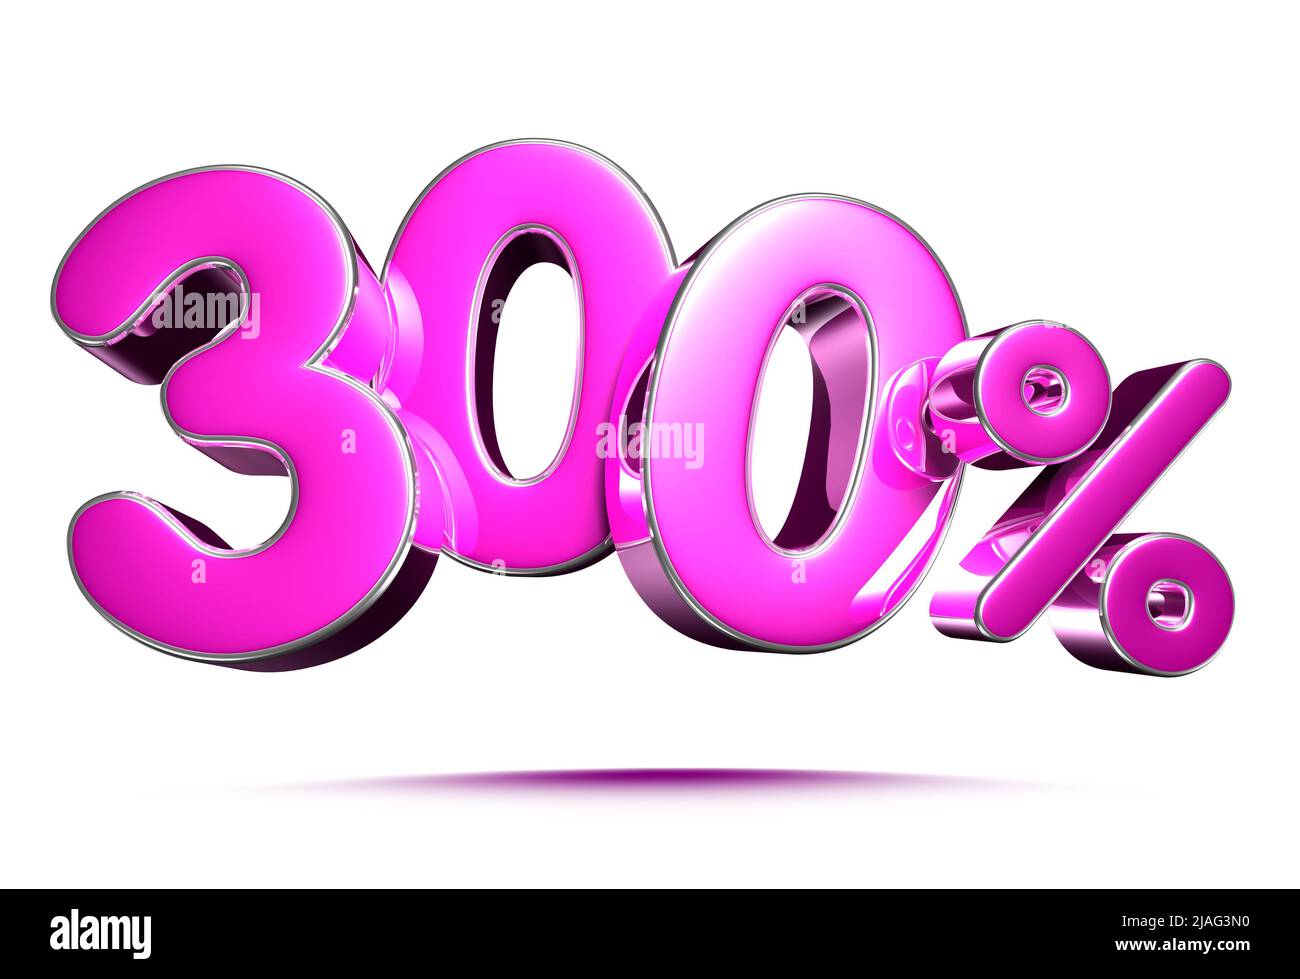 Rosa 300 Prozent 3D Illustration Zeichen auf weißem Hintergrund, Sonderangebot 300% Rabatt Tag, Verkauf bis zu 300 Prozent Rabatt, Anteil 300 Prozent, 300% Rabatt stor Stockfoto